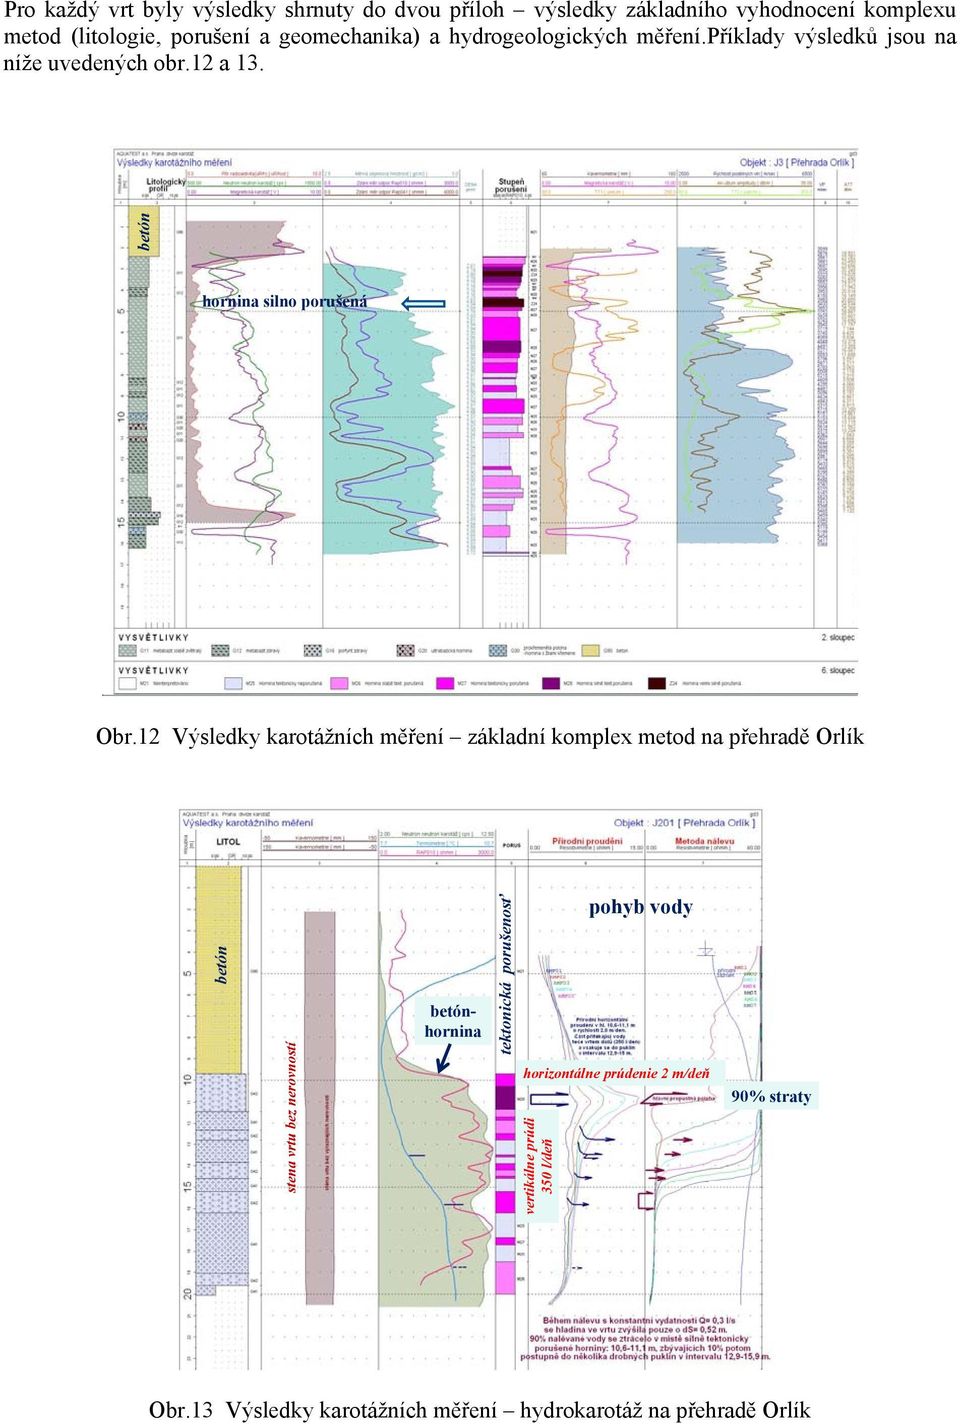 12 Výsledky karotážních měření základní komplex metod na přehradě Orlík betón stena vrtu bez nerovností betónhornina tektonická